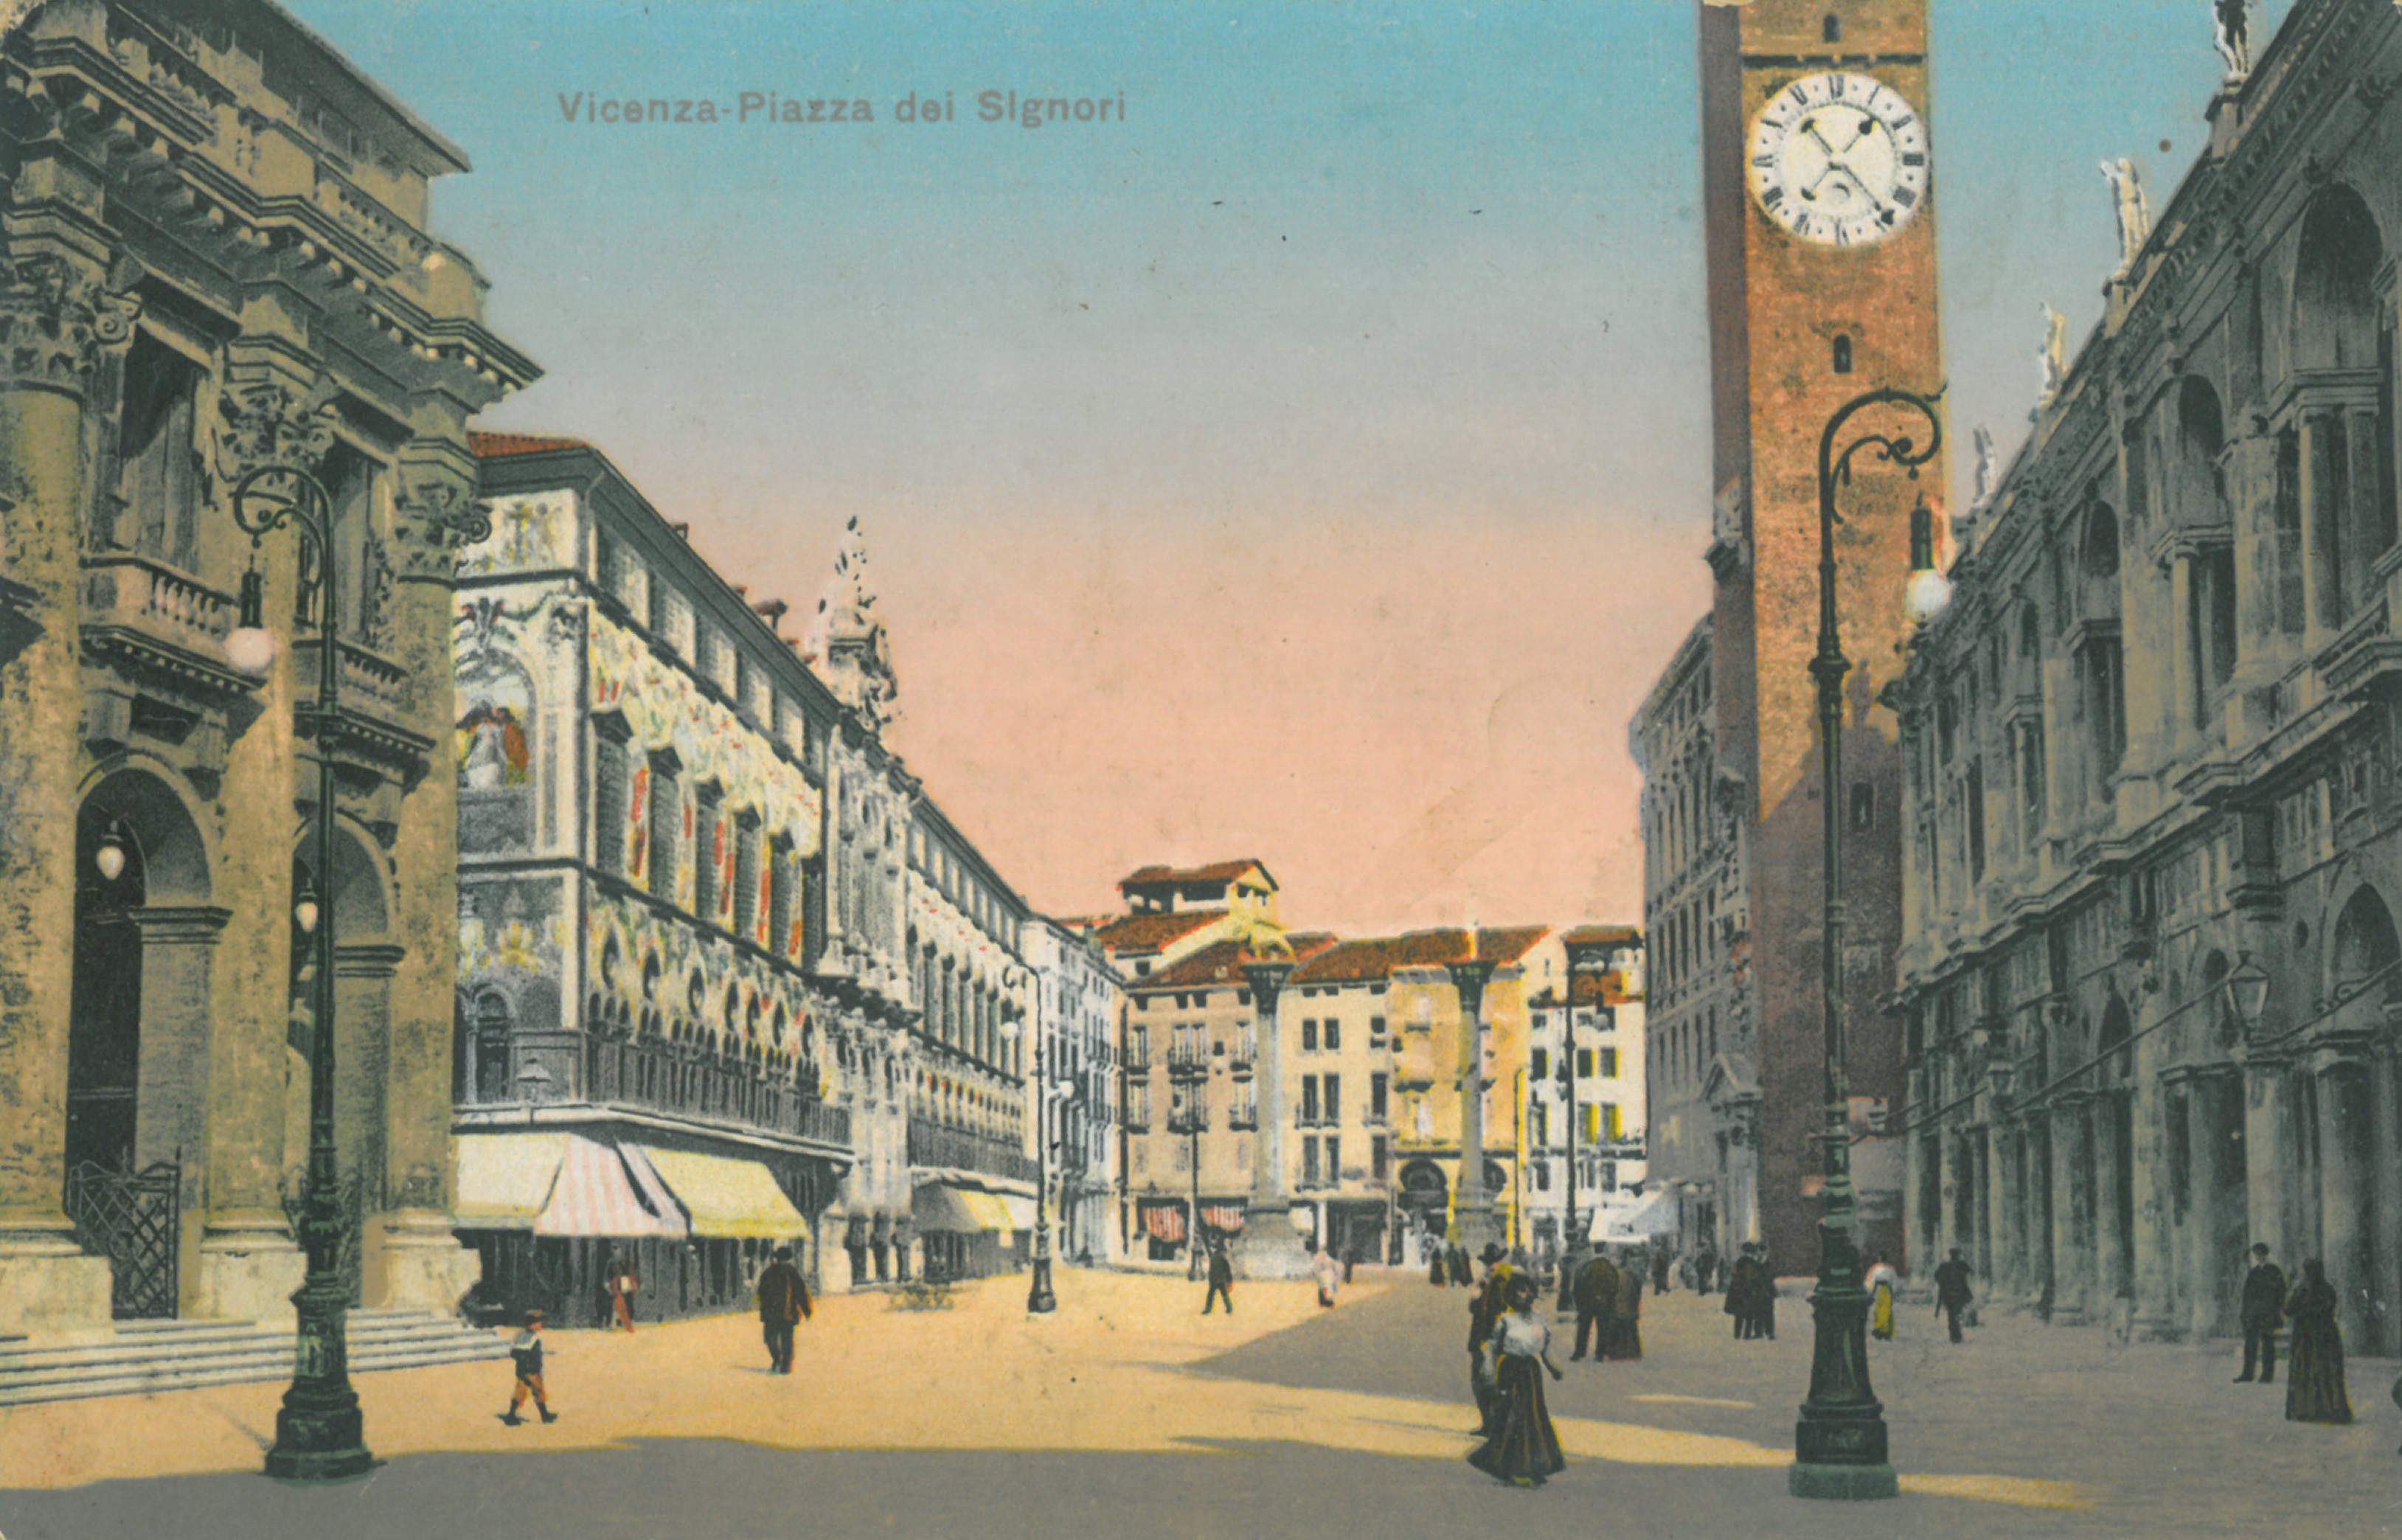 Vicenza-Piazza-dei-Signori